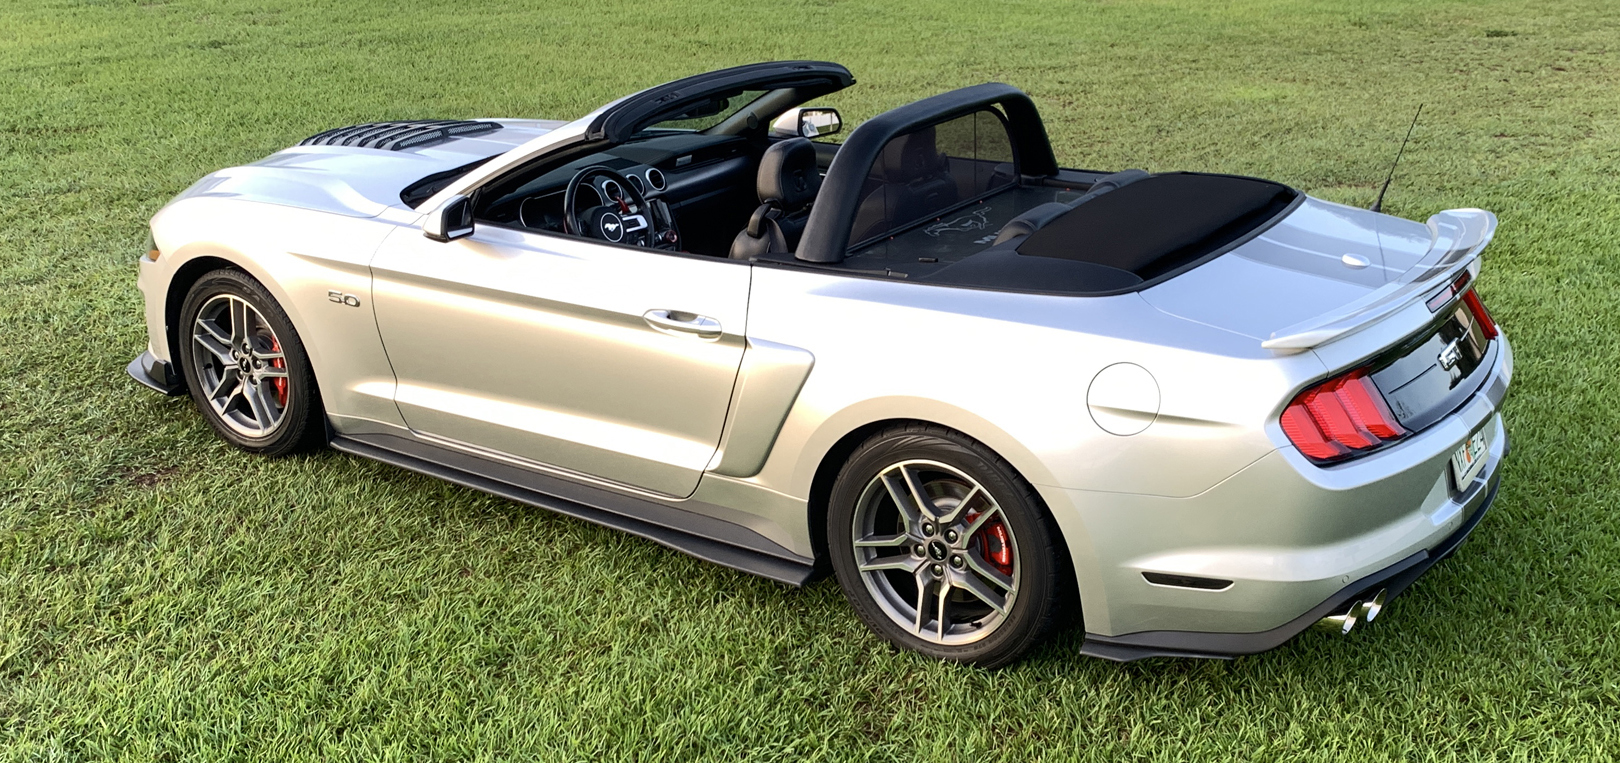 2019 Mustang GT Convertible.jpg